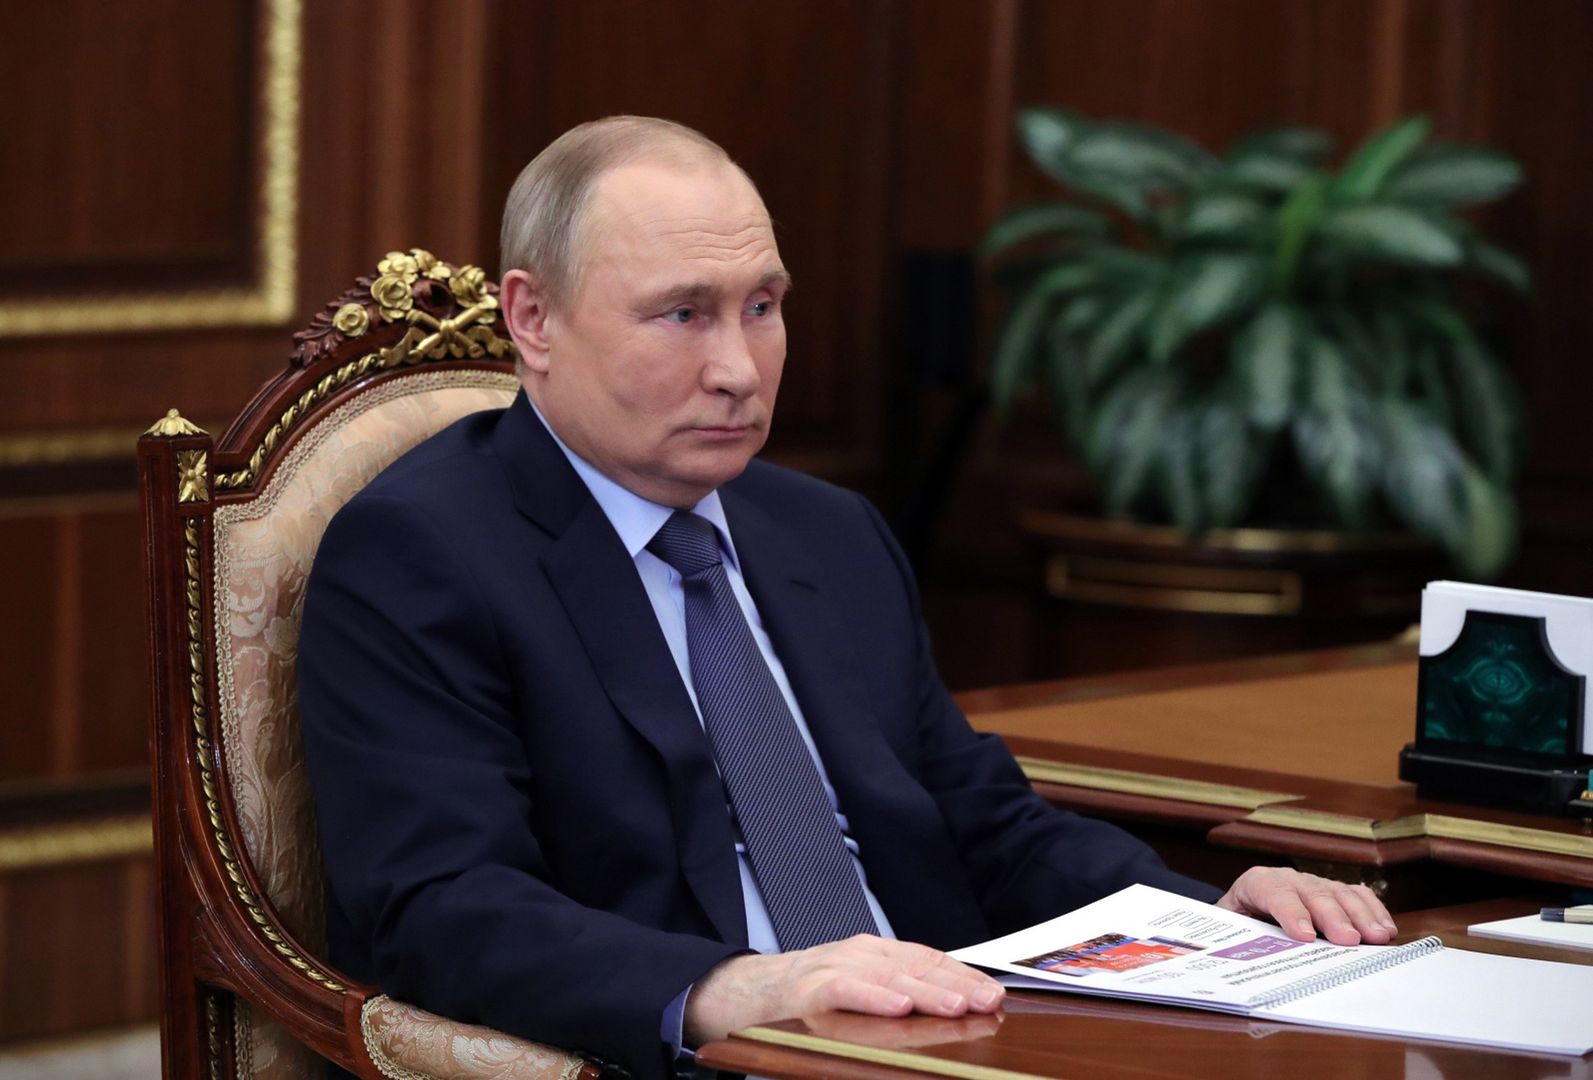 Putin szuka byłego partnera swojej kochanki. Ma poważne zarzuty